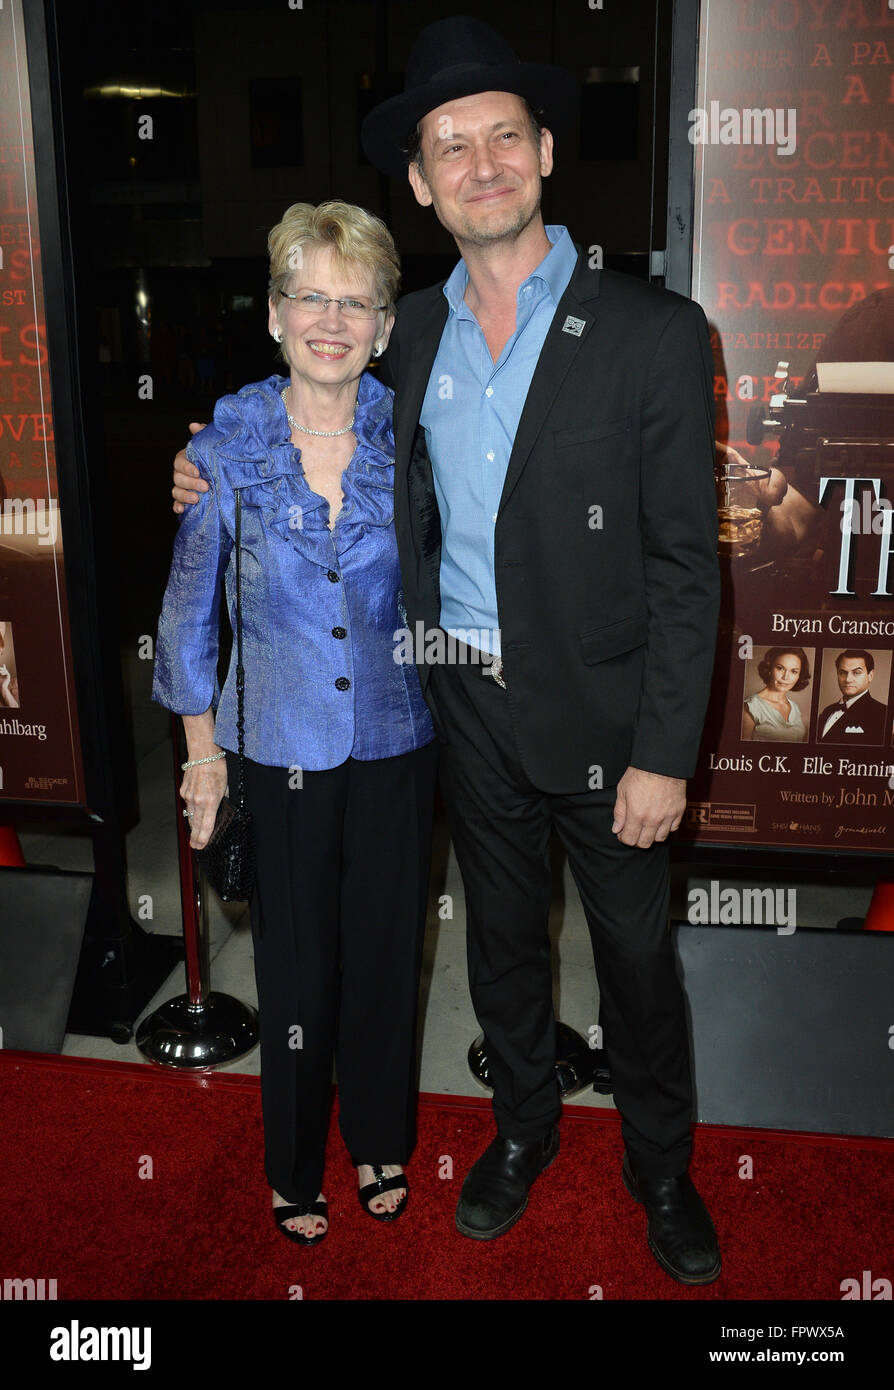 LOS ANGELES, CA - 27. Oktober 2015: Schauspieler Johnny Sneed & Mutter Patti bei der US-Premiere von "Trumbo" an der Academy of Motion Picture Arts & Sciences, Beverly Hills. Stockfoto